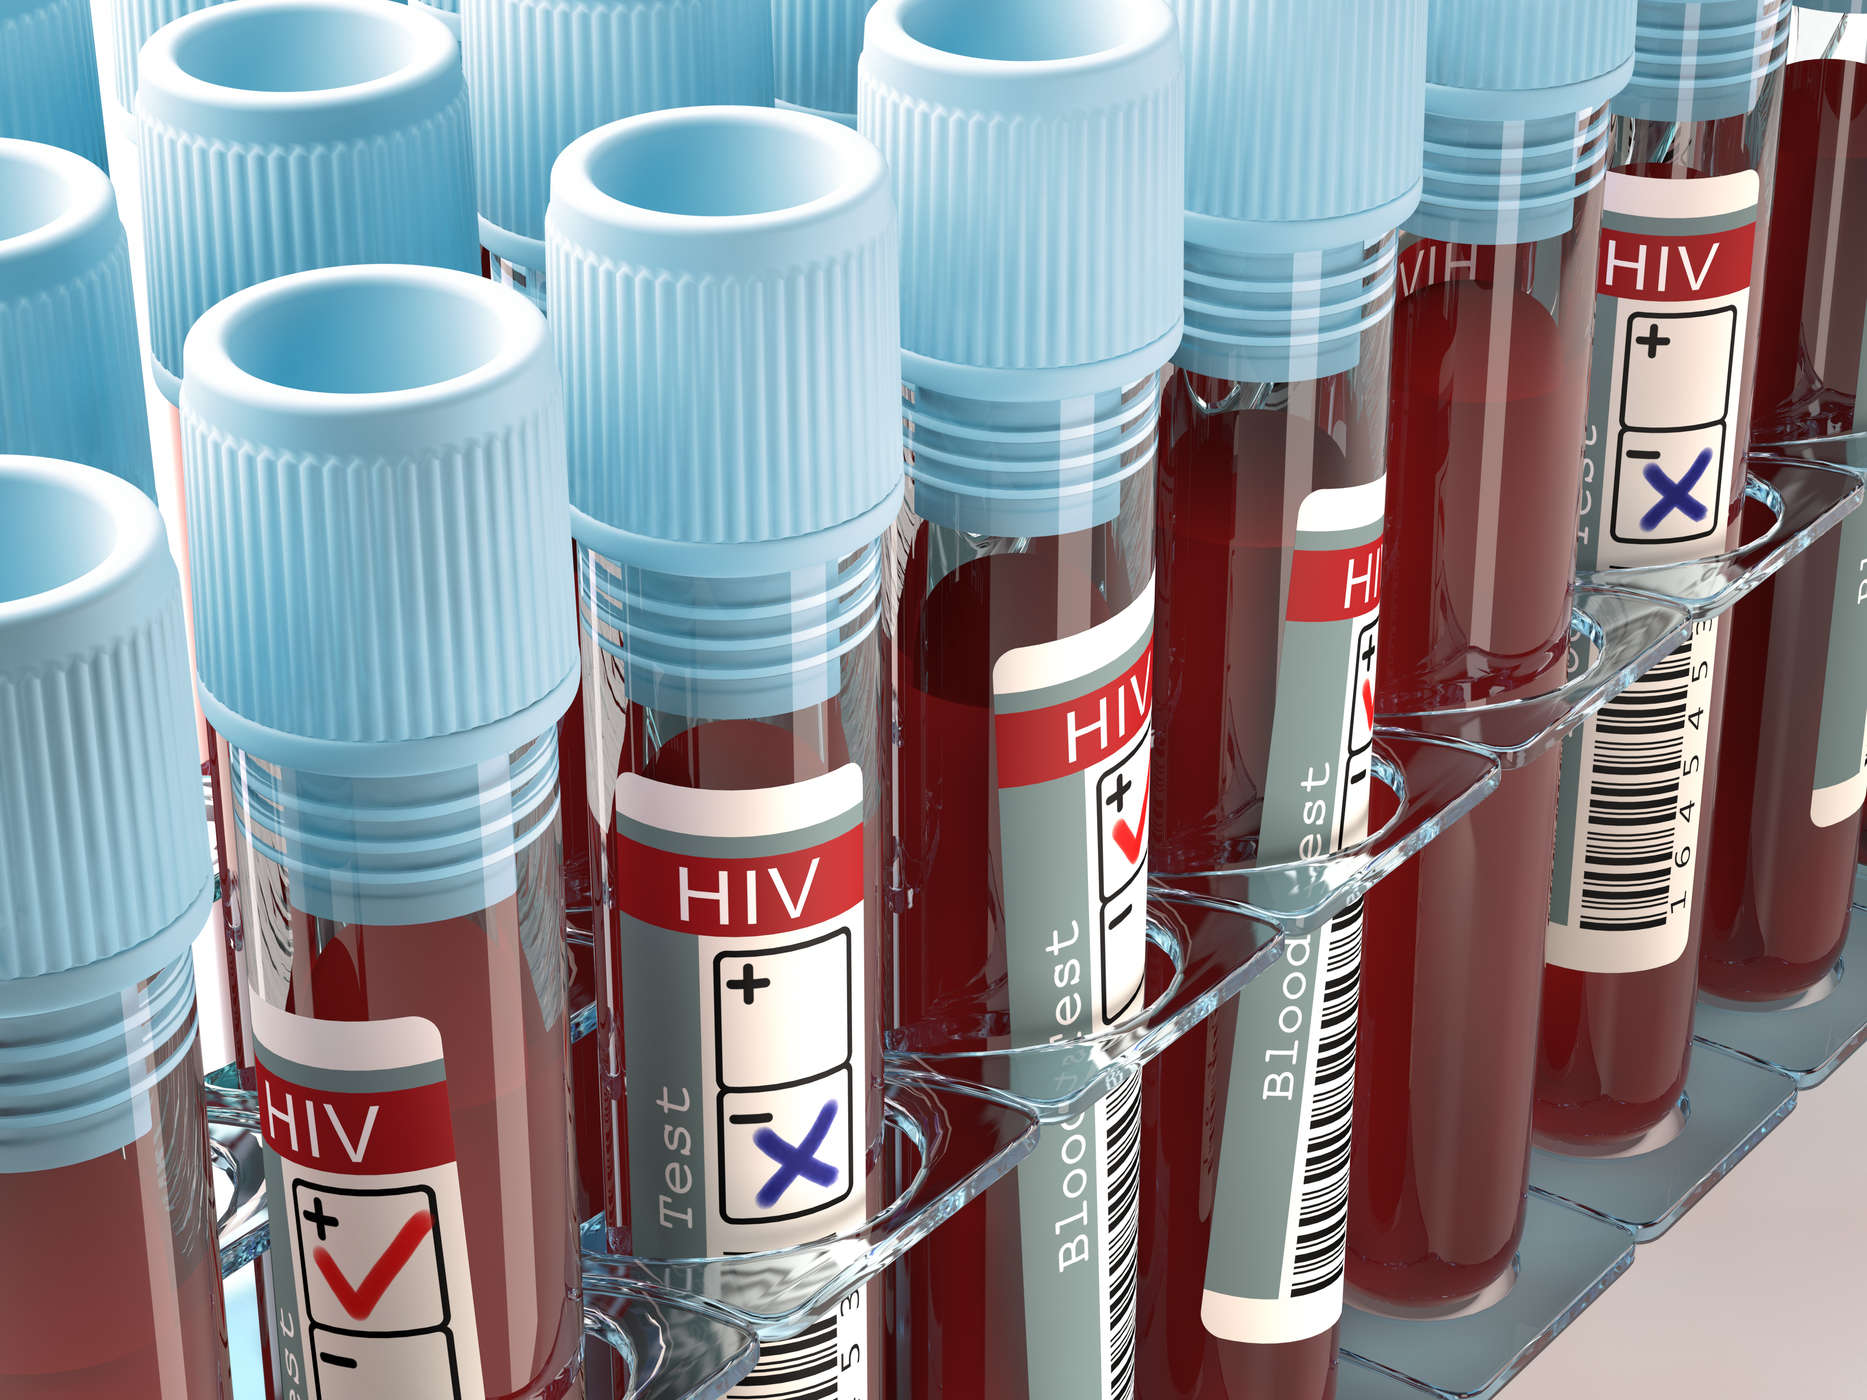 Apakah Saya Berisiko Terinfeksi HIV? Waspadai Berbagai Penyebab HIV AIDS